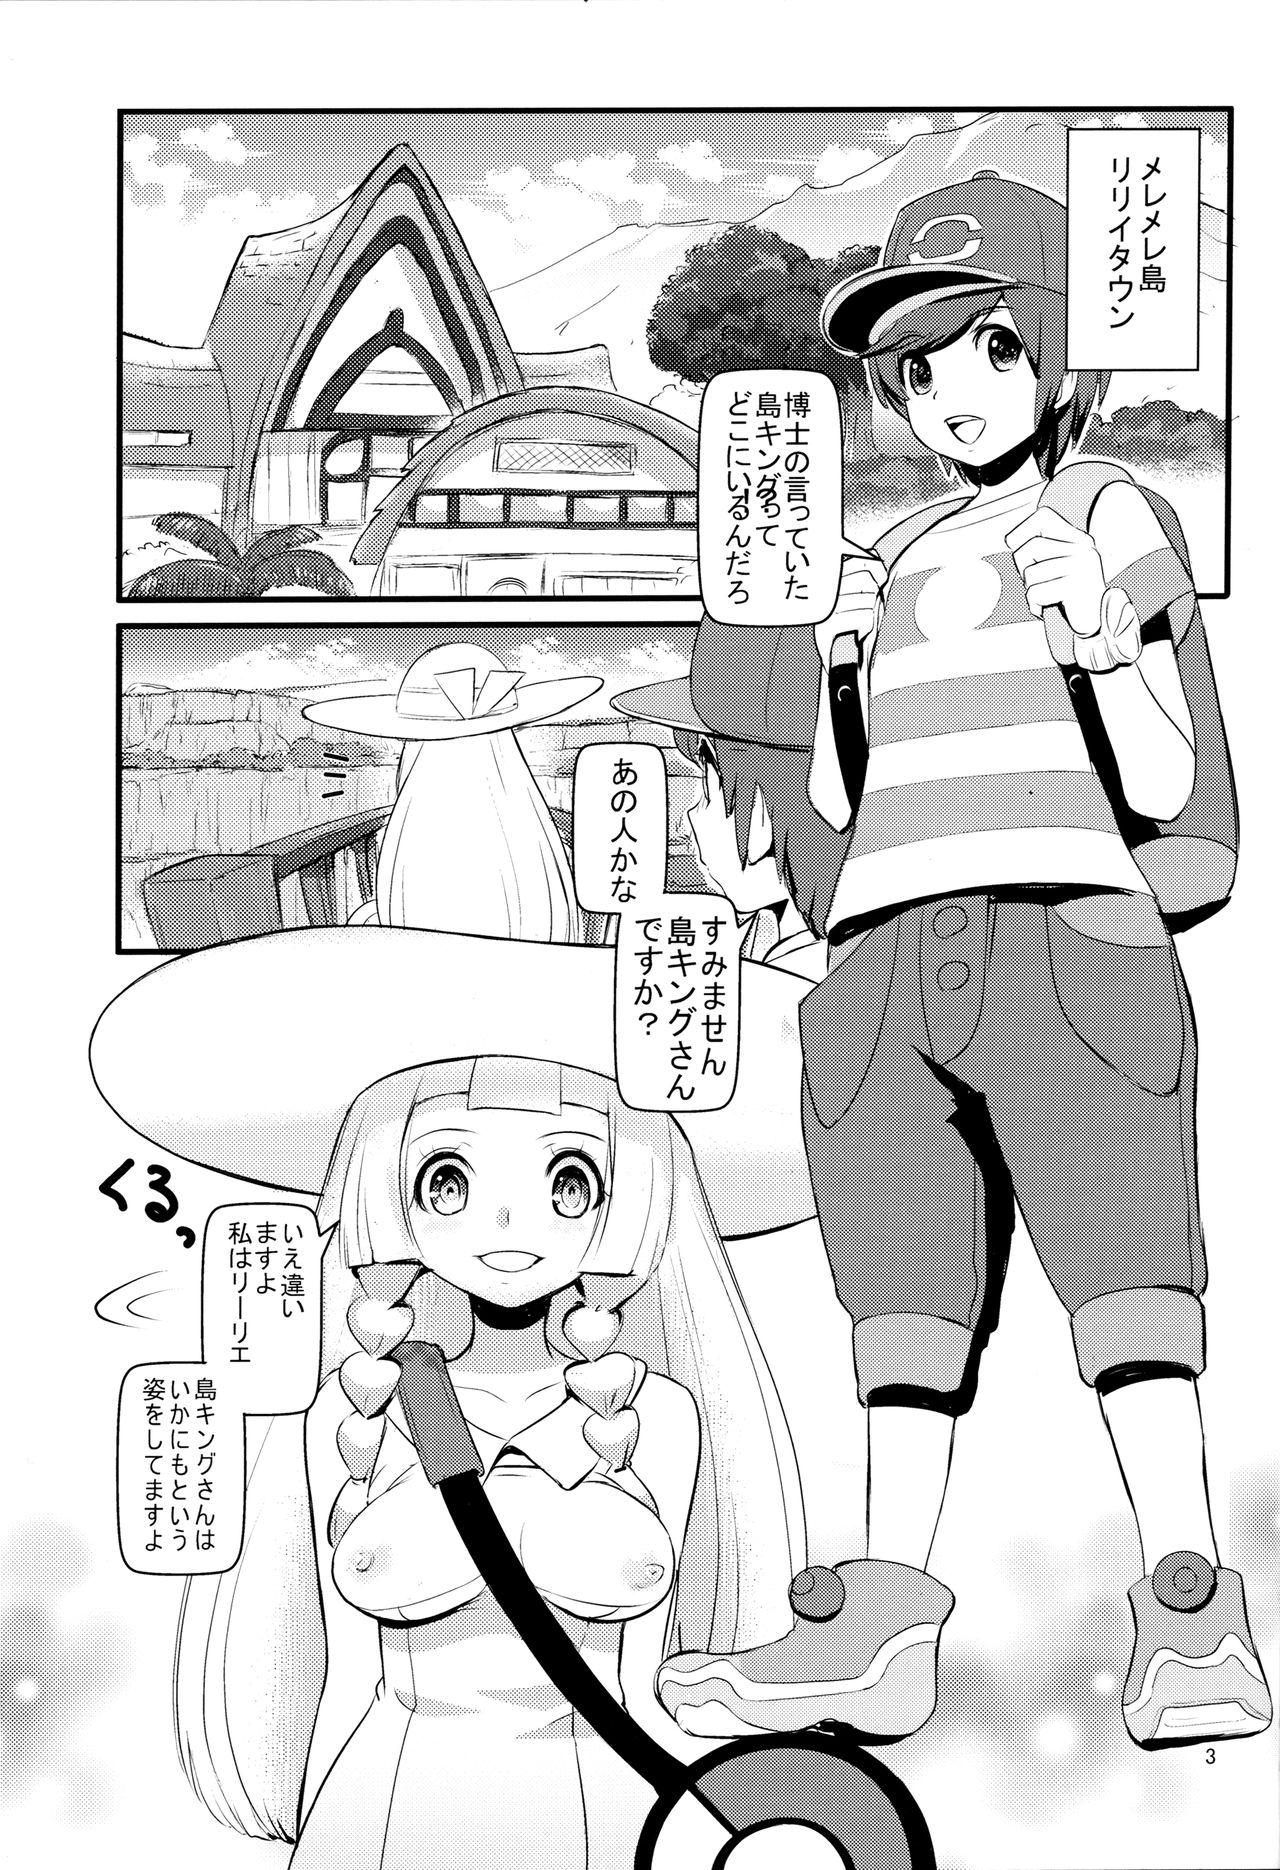 Periscope PUA LANI - Pokemon Prostitute - Page 2